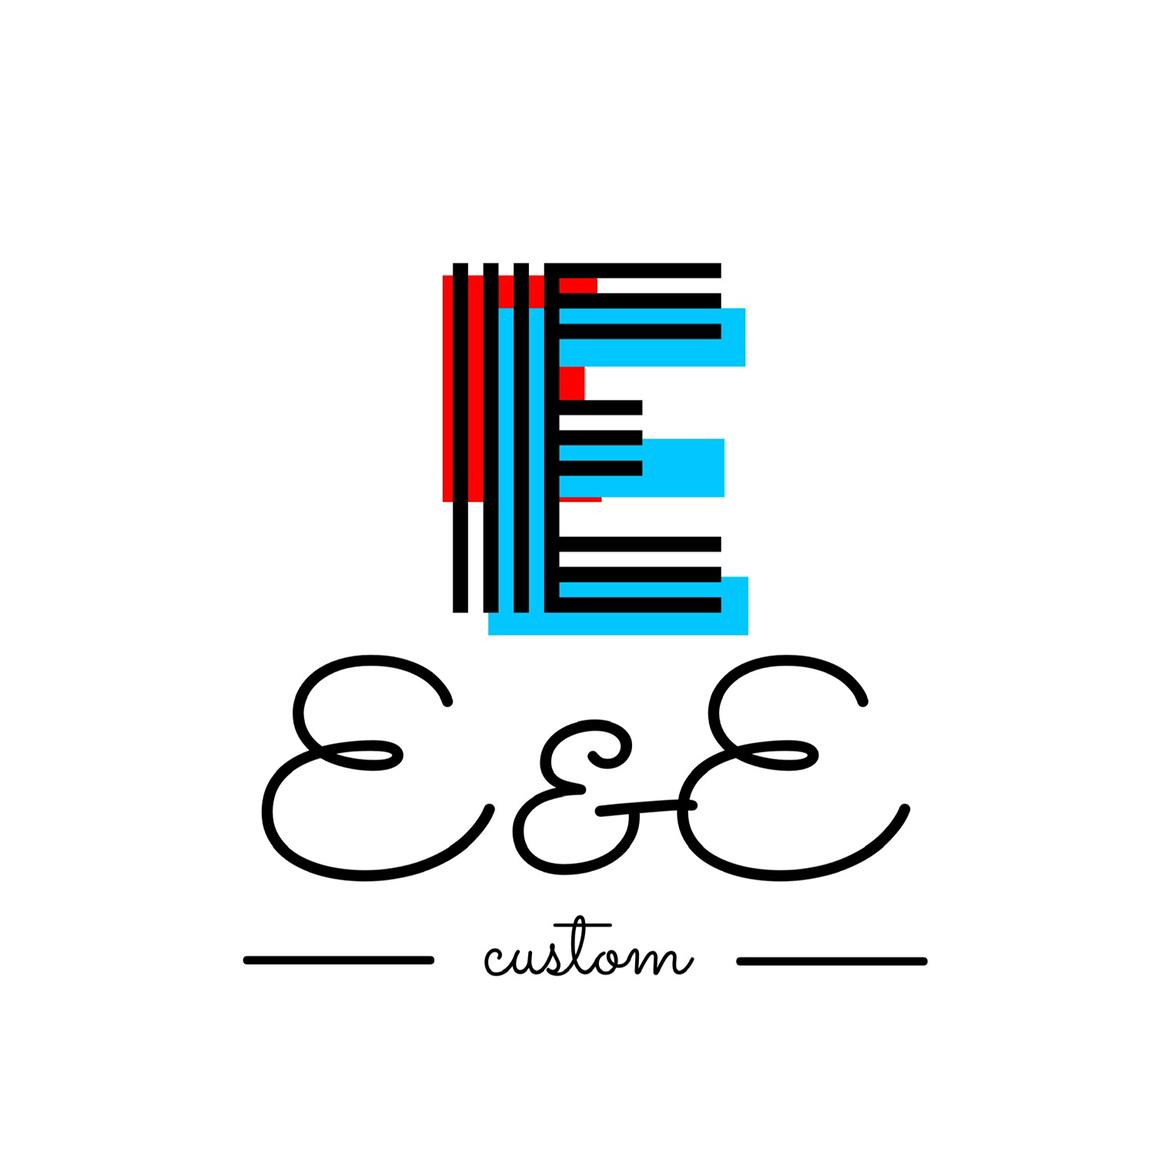 E&E Custom 's images